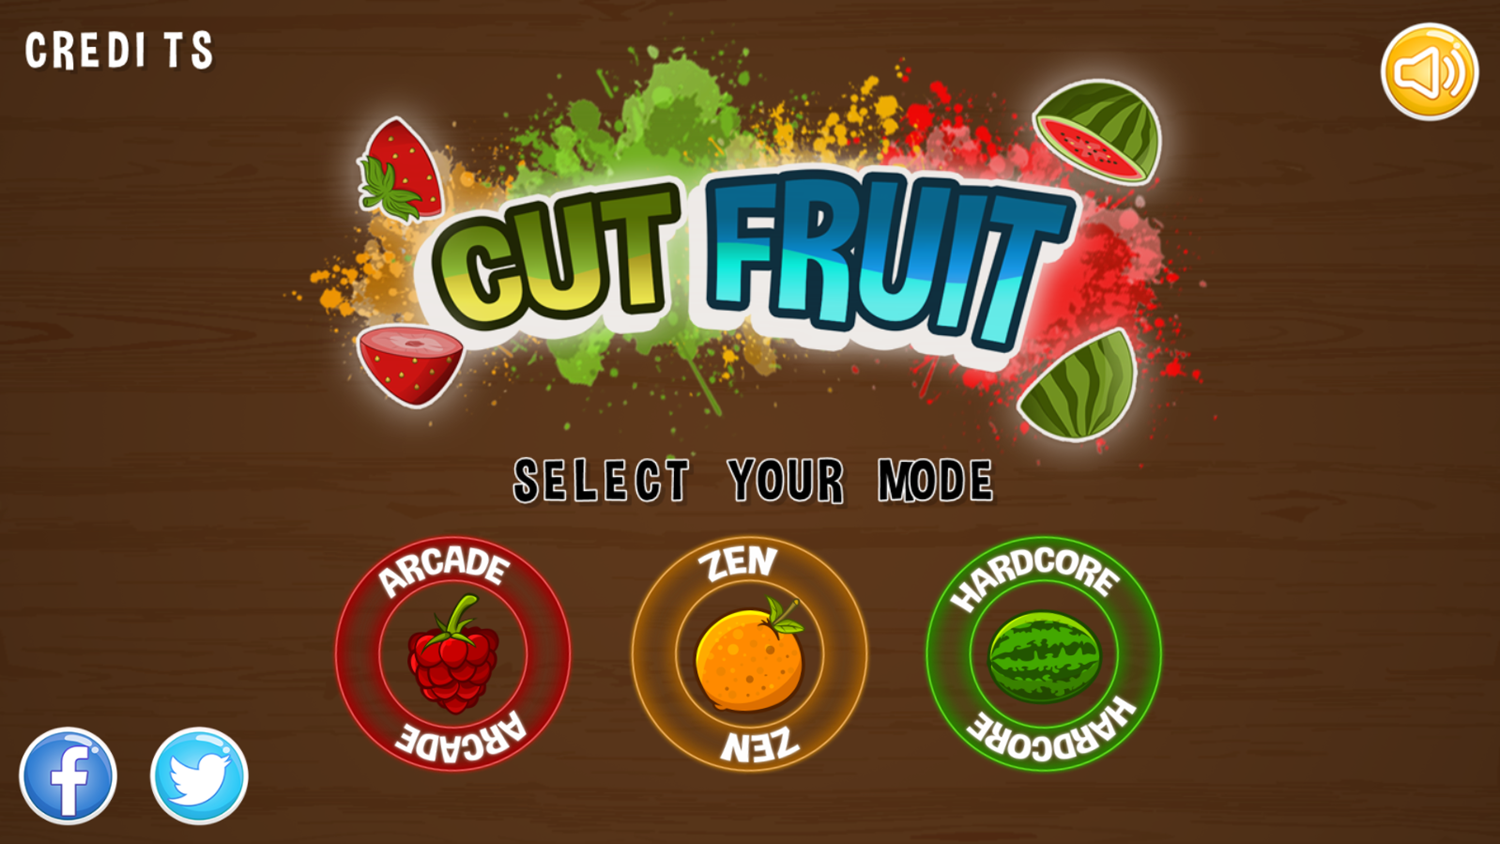 Cut Fruit Game Welcome Screen Screenshot.